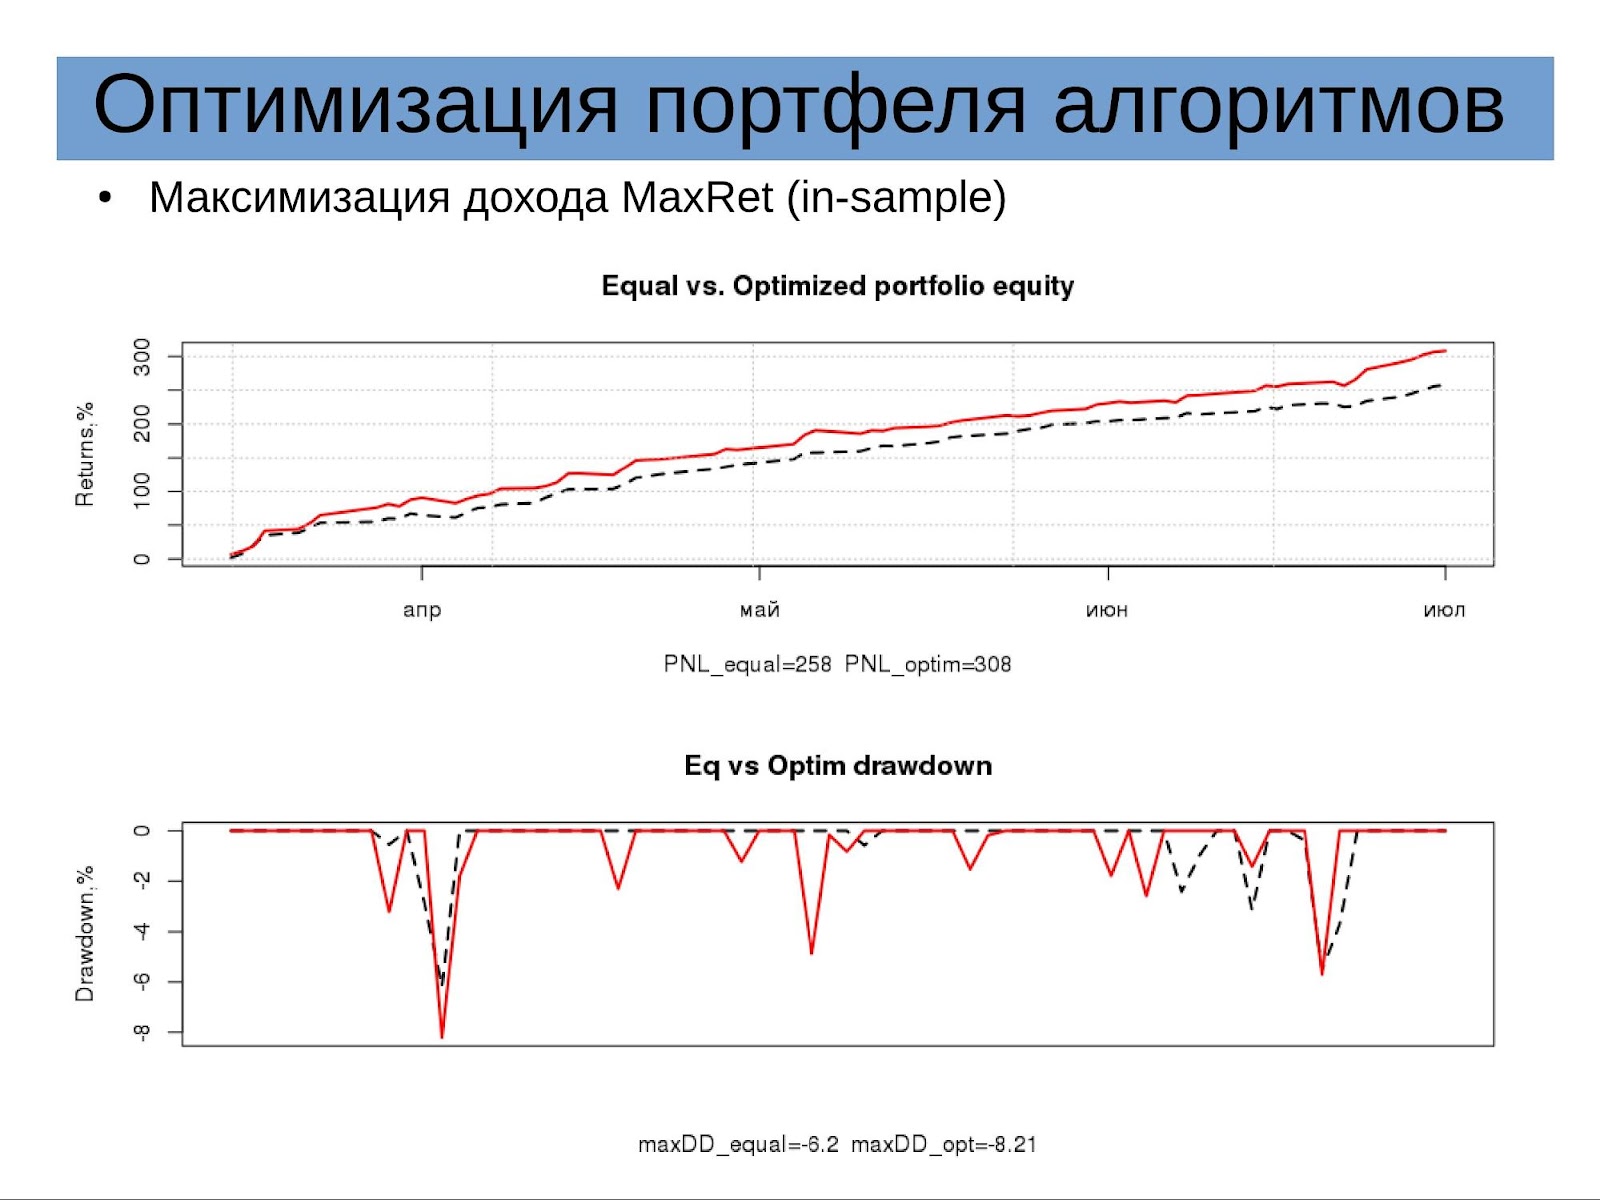 Доклад «Оптимизация портфеля алгоритмических стратегий» на конфе смартлаба 24.09.16